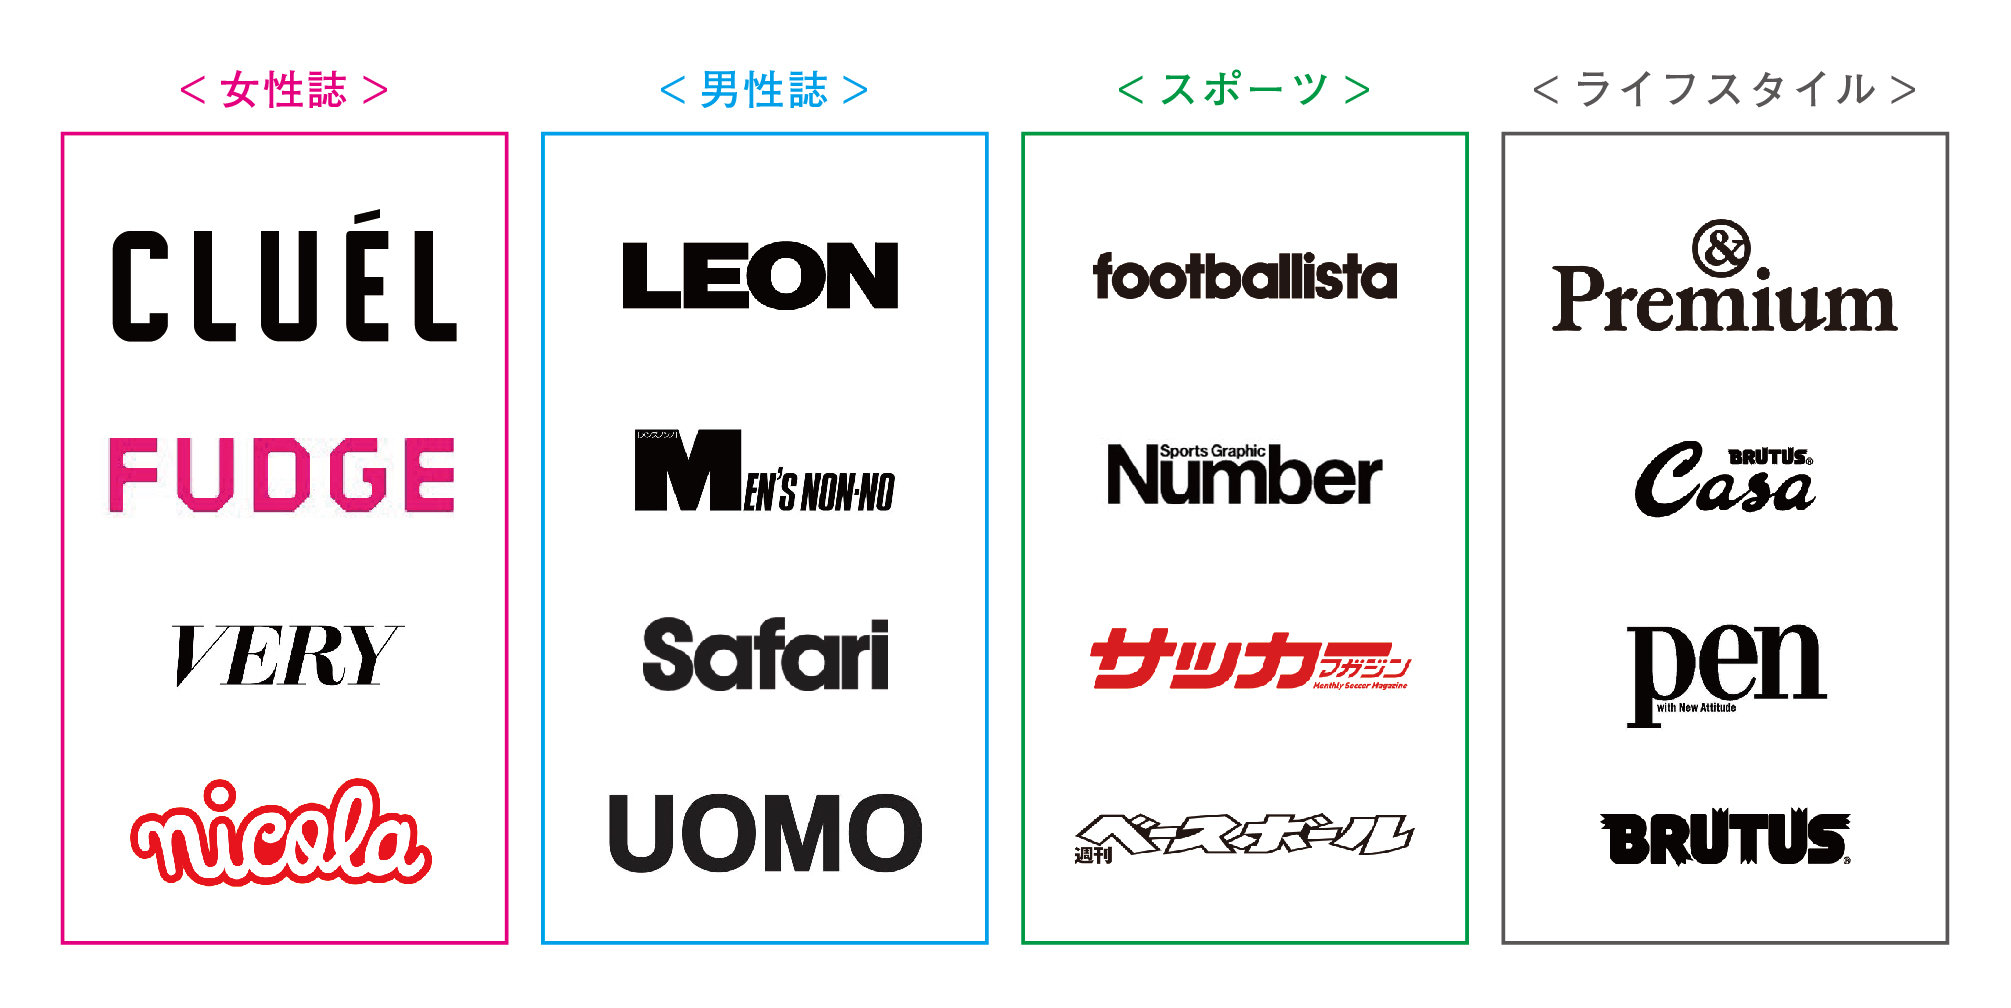 Twitter 上的 坂東進亮 Graphic Designer 雑誌ロゴは ロゴタイプのインプットに最適なんじゃないかと思う 文字としてのデザイン性 ターゲット 読者層を意識したデザイン 雑誌のもつイメージ ブランドを反映 競合との差別化 オリジナリティ 当該カテゴリの